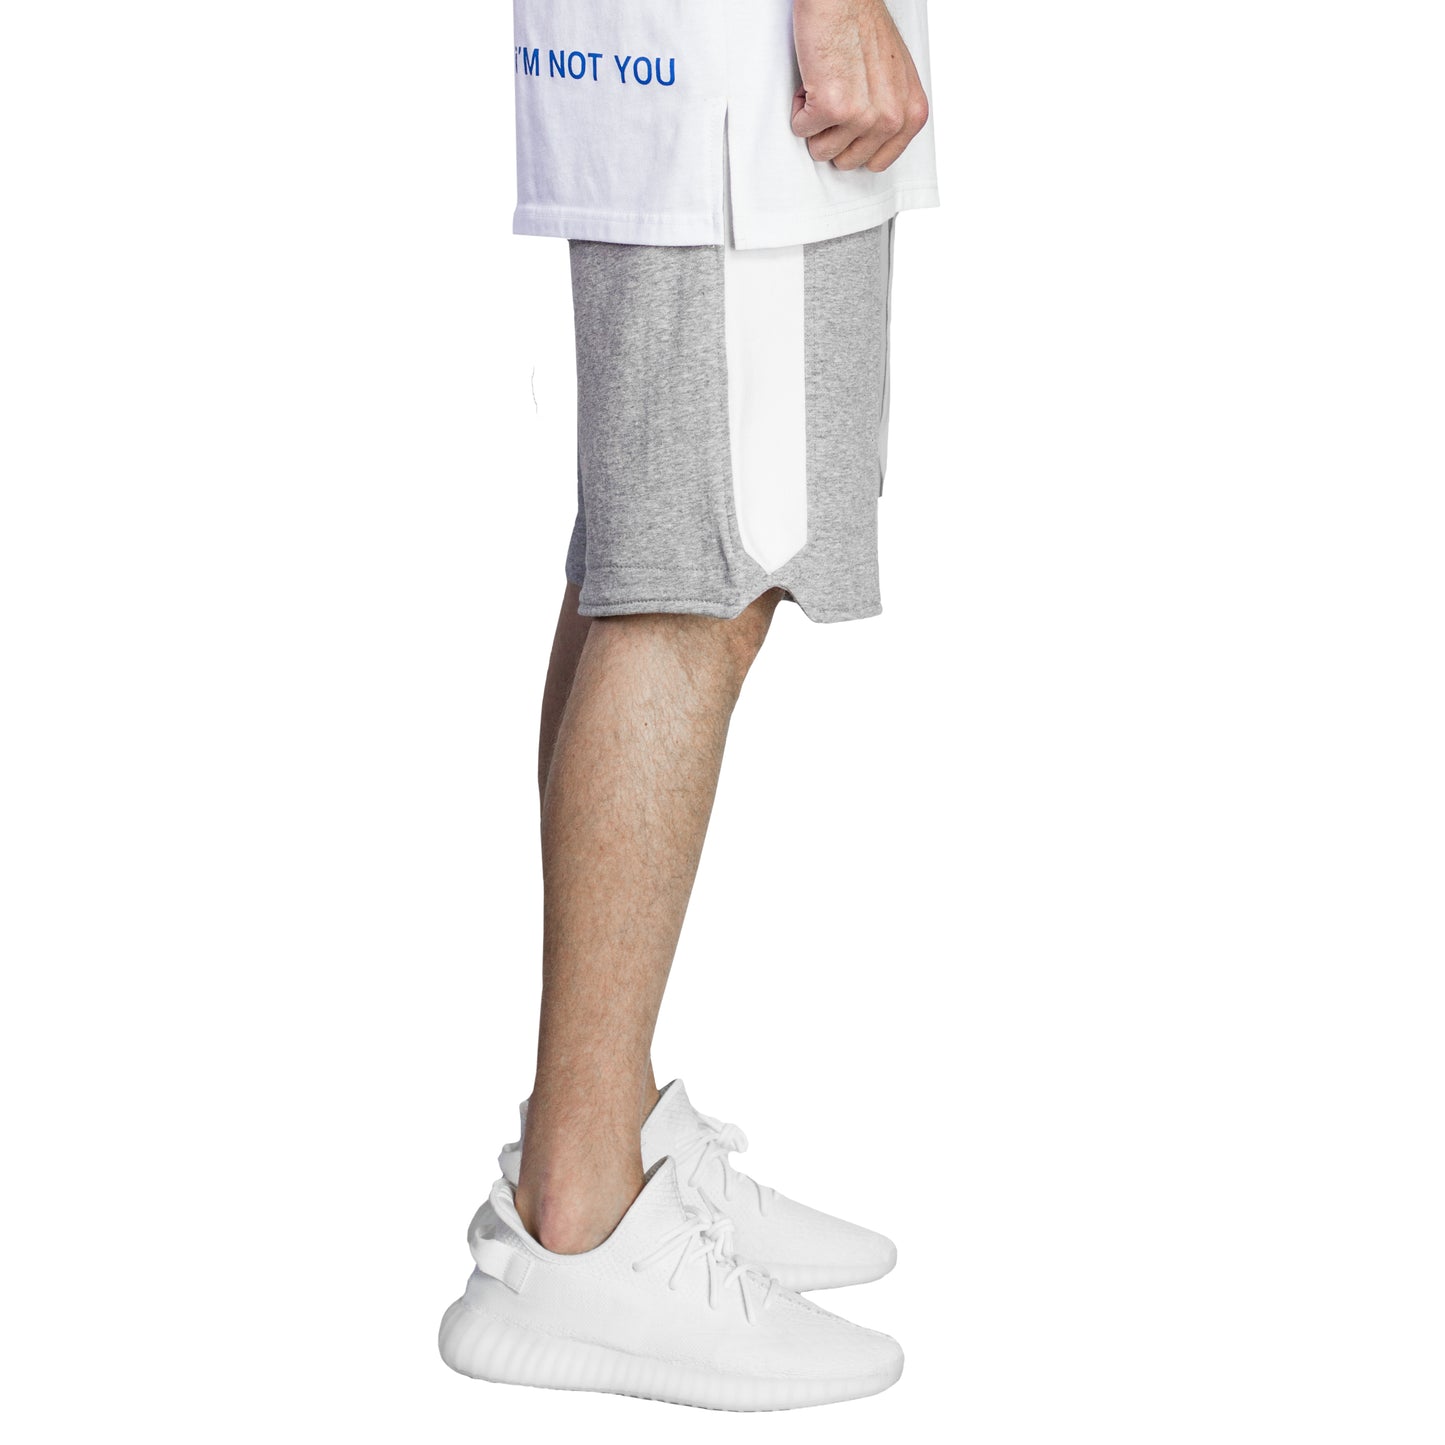 Pantalones cortos deportivos: gris jaspeado/blanco